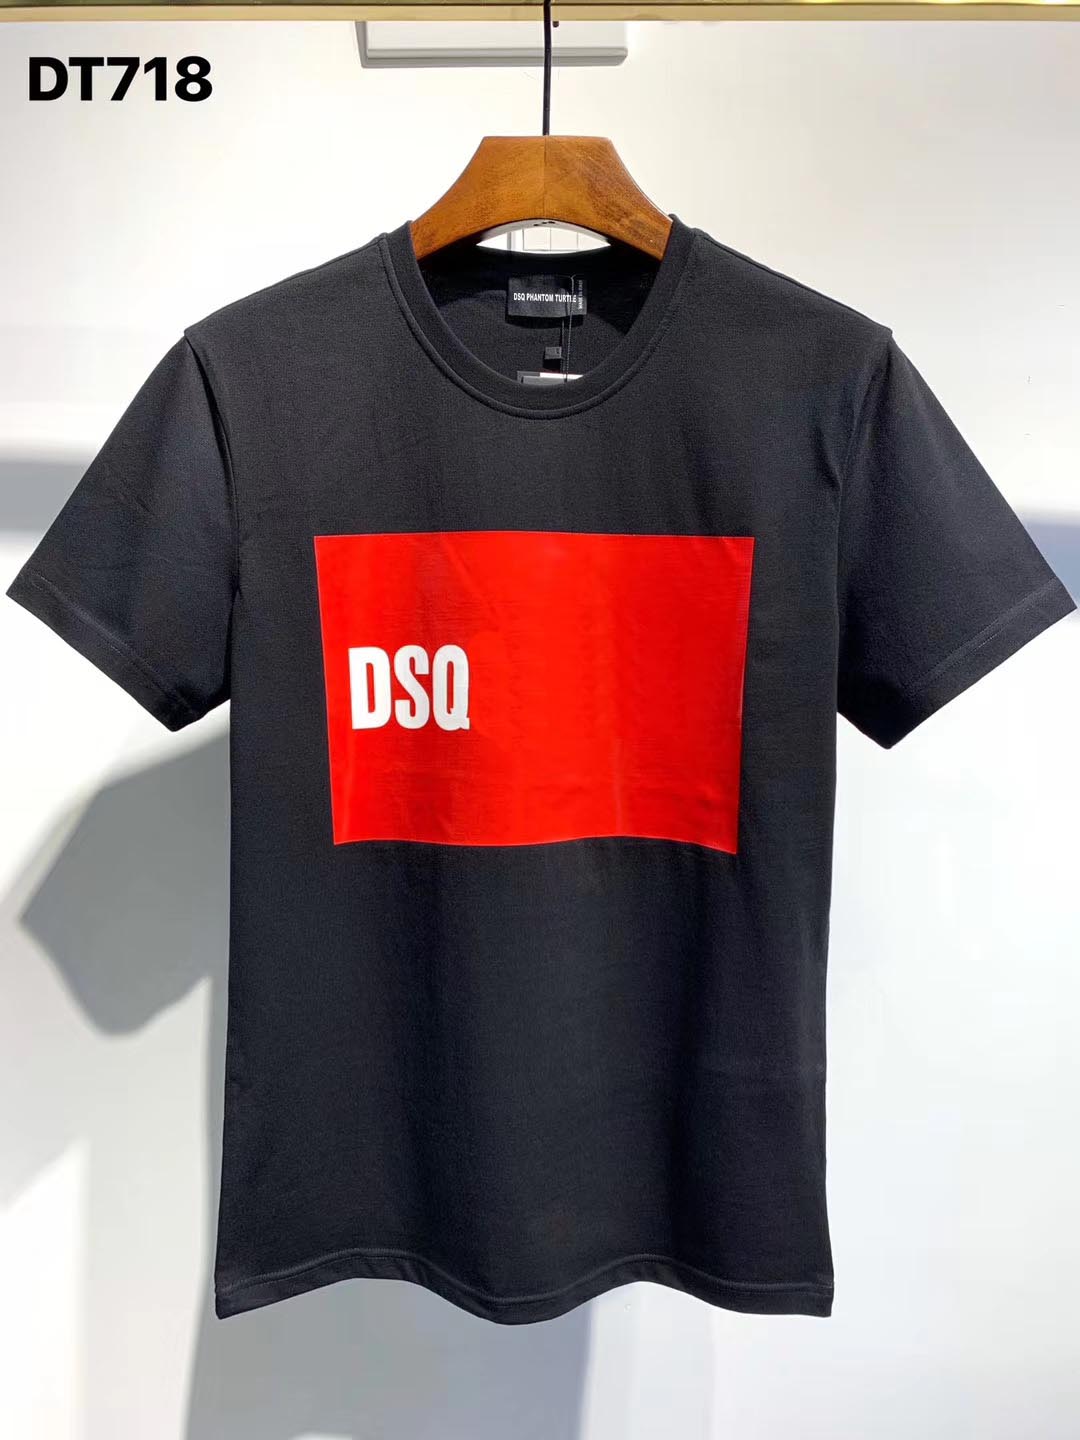 

DSQ PHANTOM TURTLE 2020FW New Mens Designer T shirt Italy fashion Tshirts Summer DSQ Pattern T-shirt Male Top Quality 100% Cotton Top 7516, White